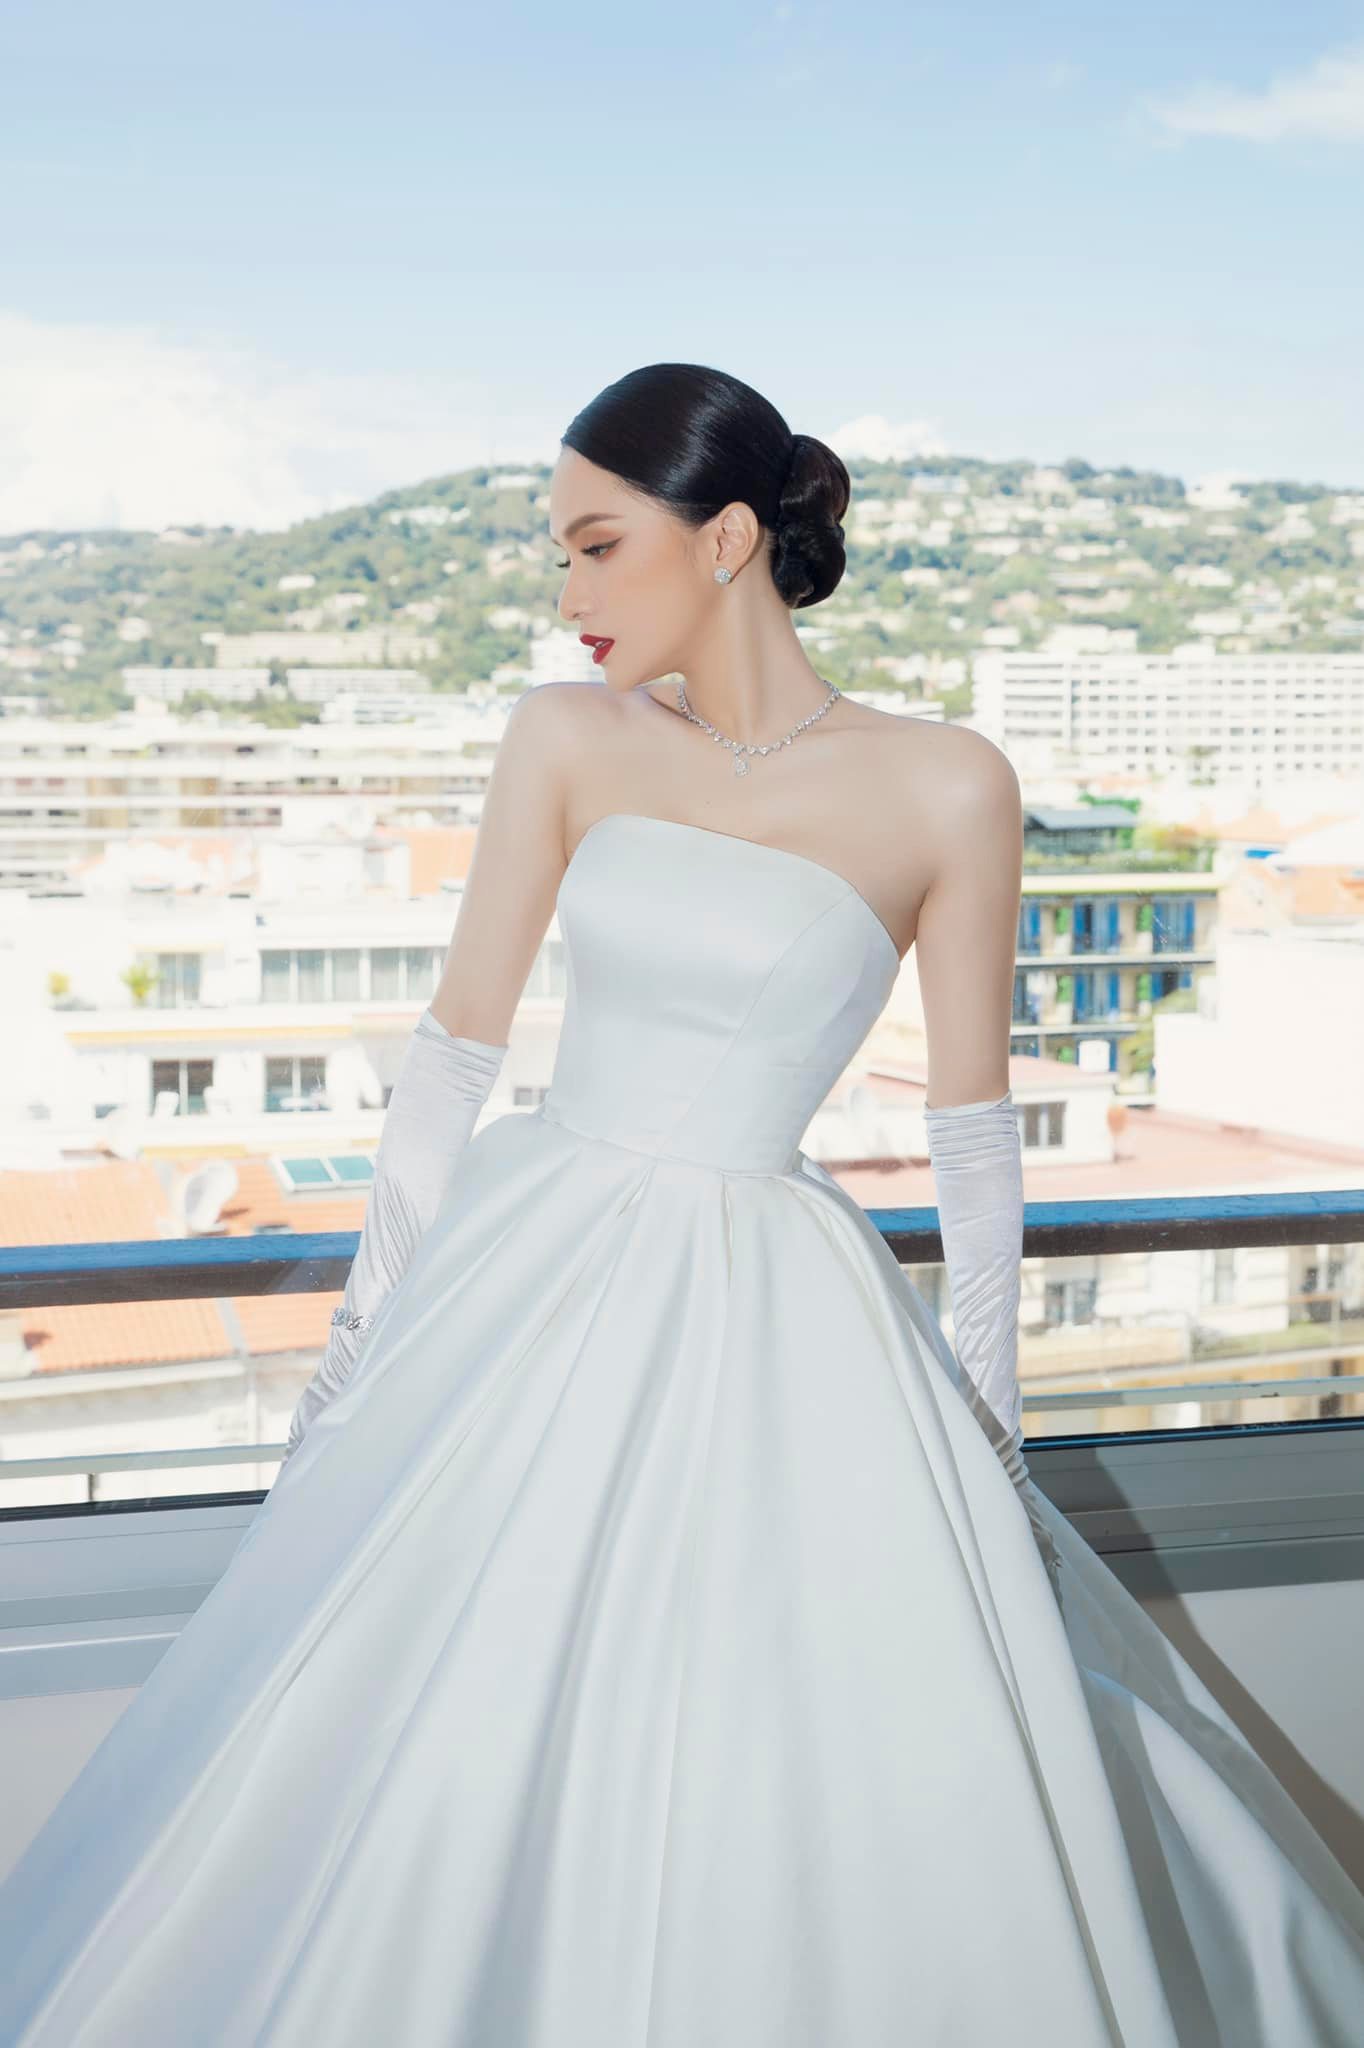 Hương Giang diện váy như cô dâu, bất ngờ xuất hiện trên thảm đỏ Cannes - Ảnh 1.